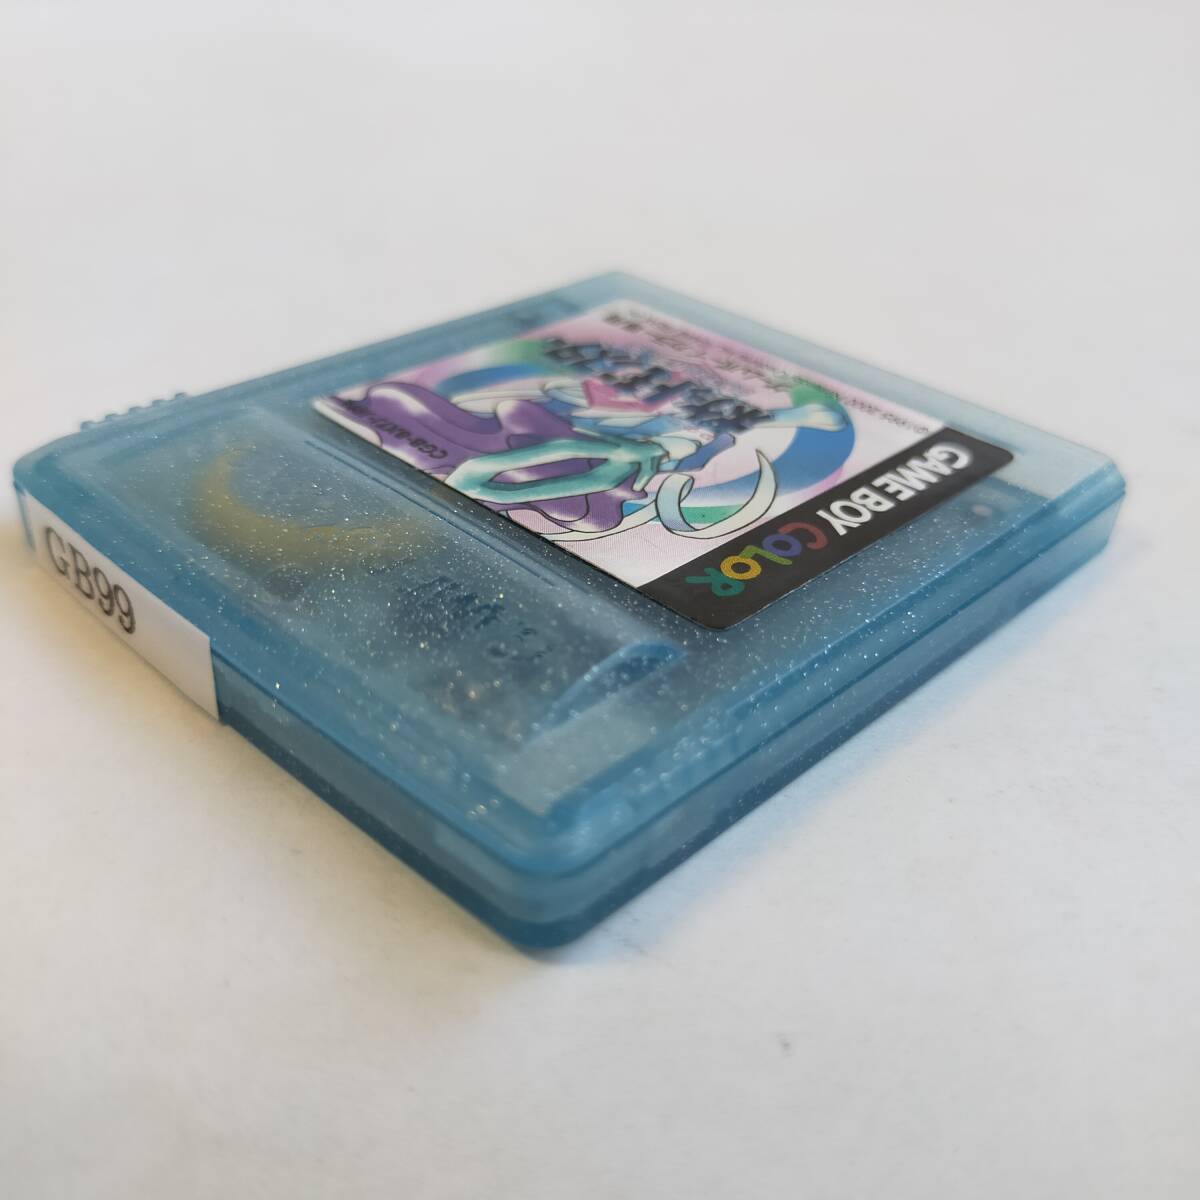 ポケットモンスター クリスタルバージョン GameBoy ゲームボーイカラー 動作確認済・端子清掃済[GB6910_99]の画像8